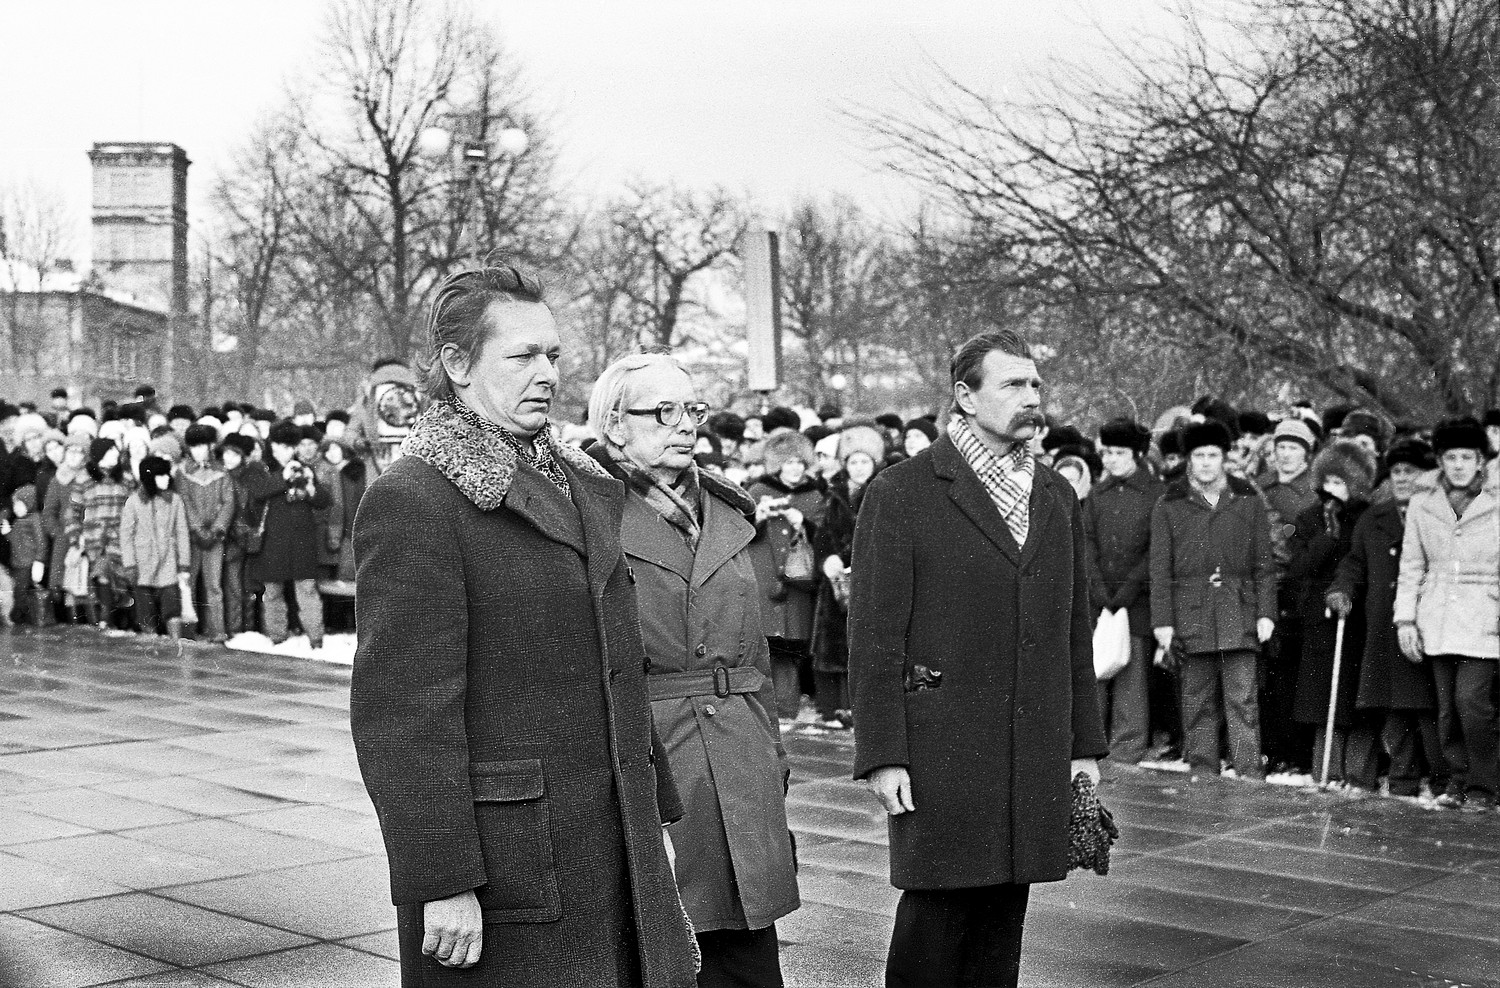 Opening of a. h. Tammsaare monument 78 (13) Enn Vetemaa, Paul Kuusberg and Heino Kiik